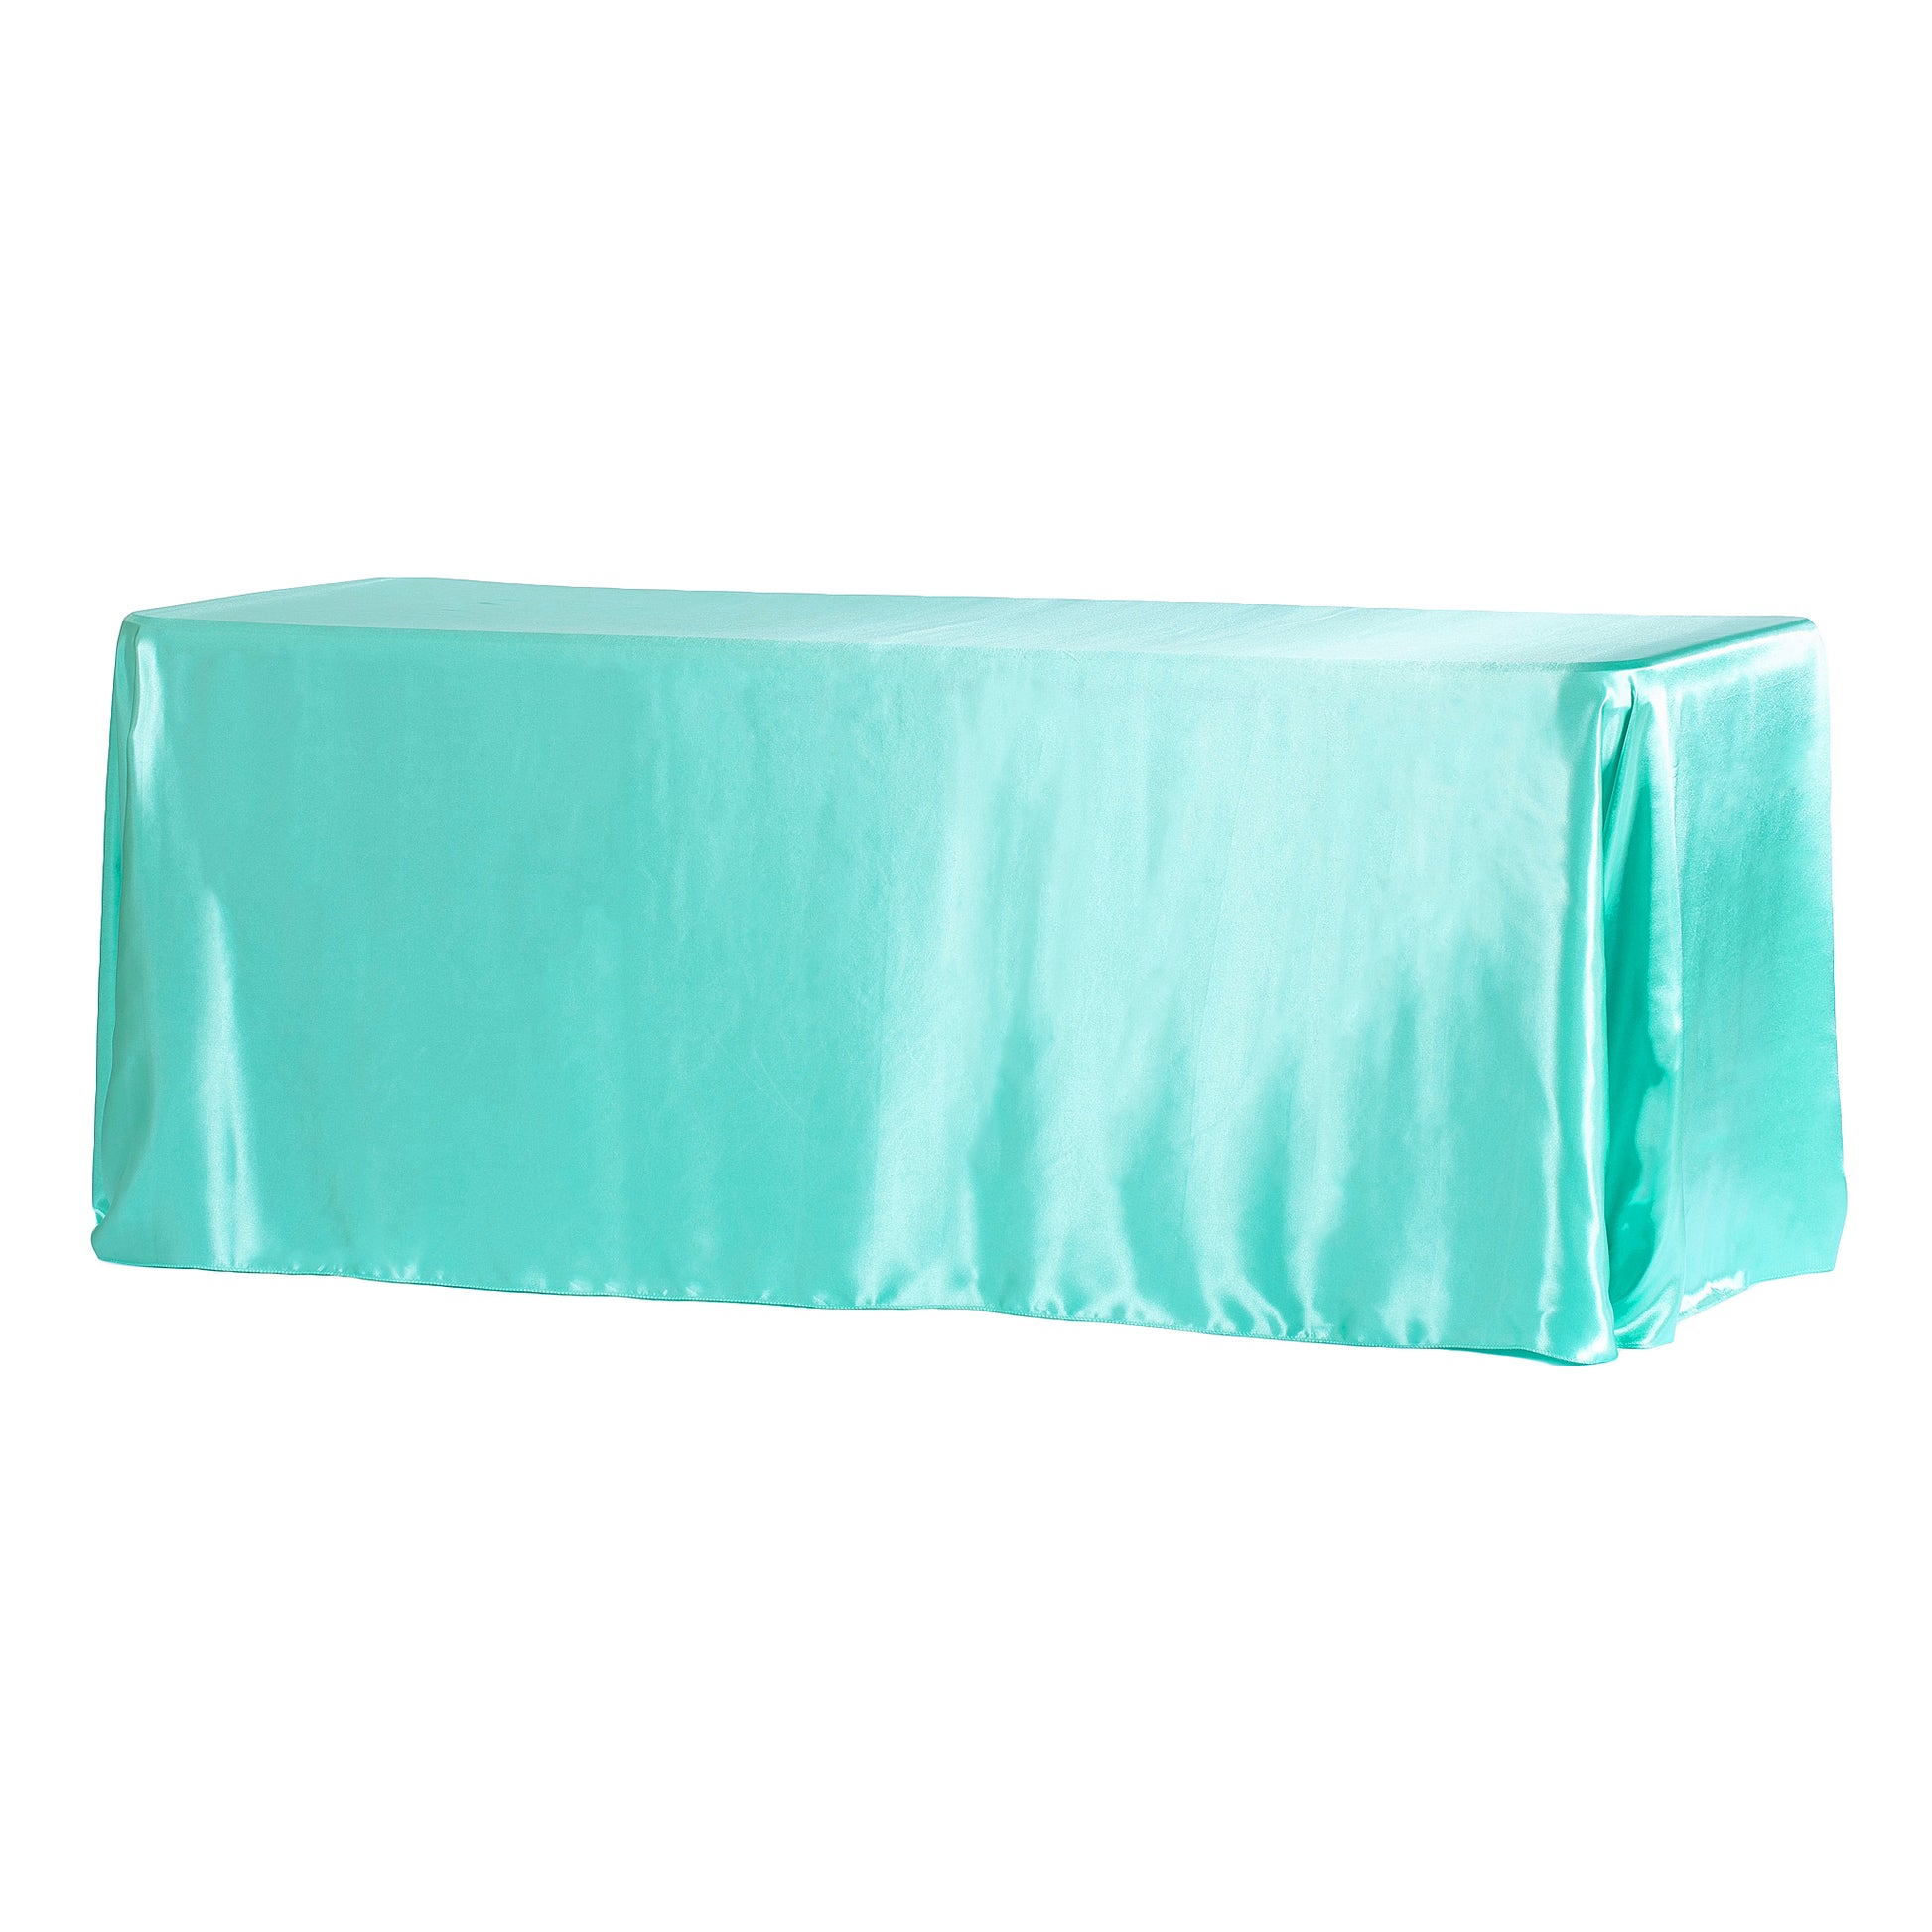 90"x156" Rectangular Satin Tablecloth - Light Turquoise